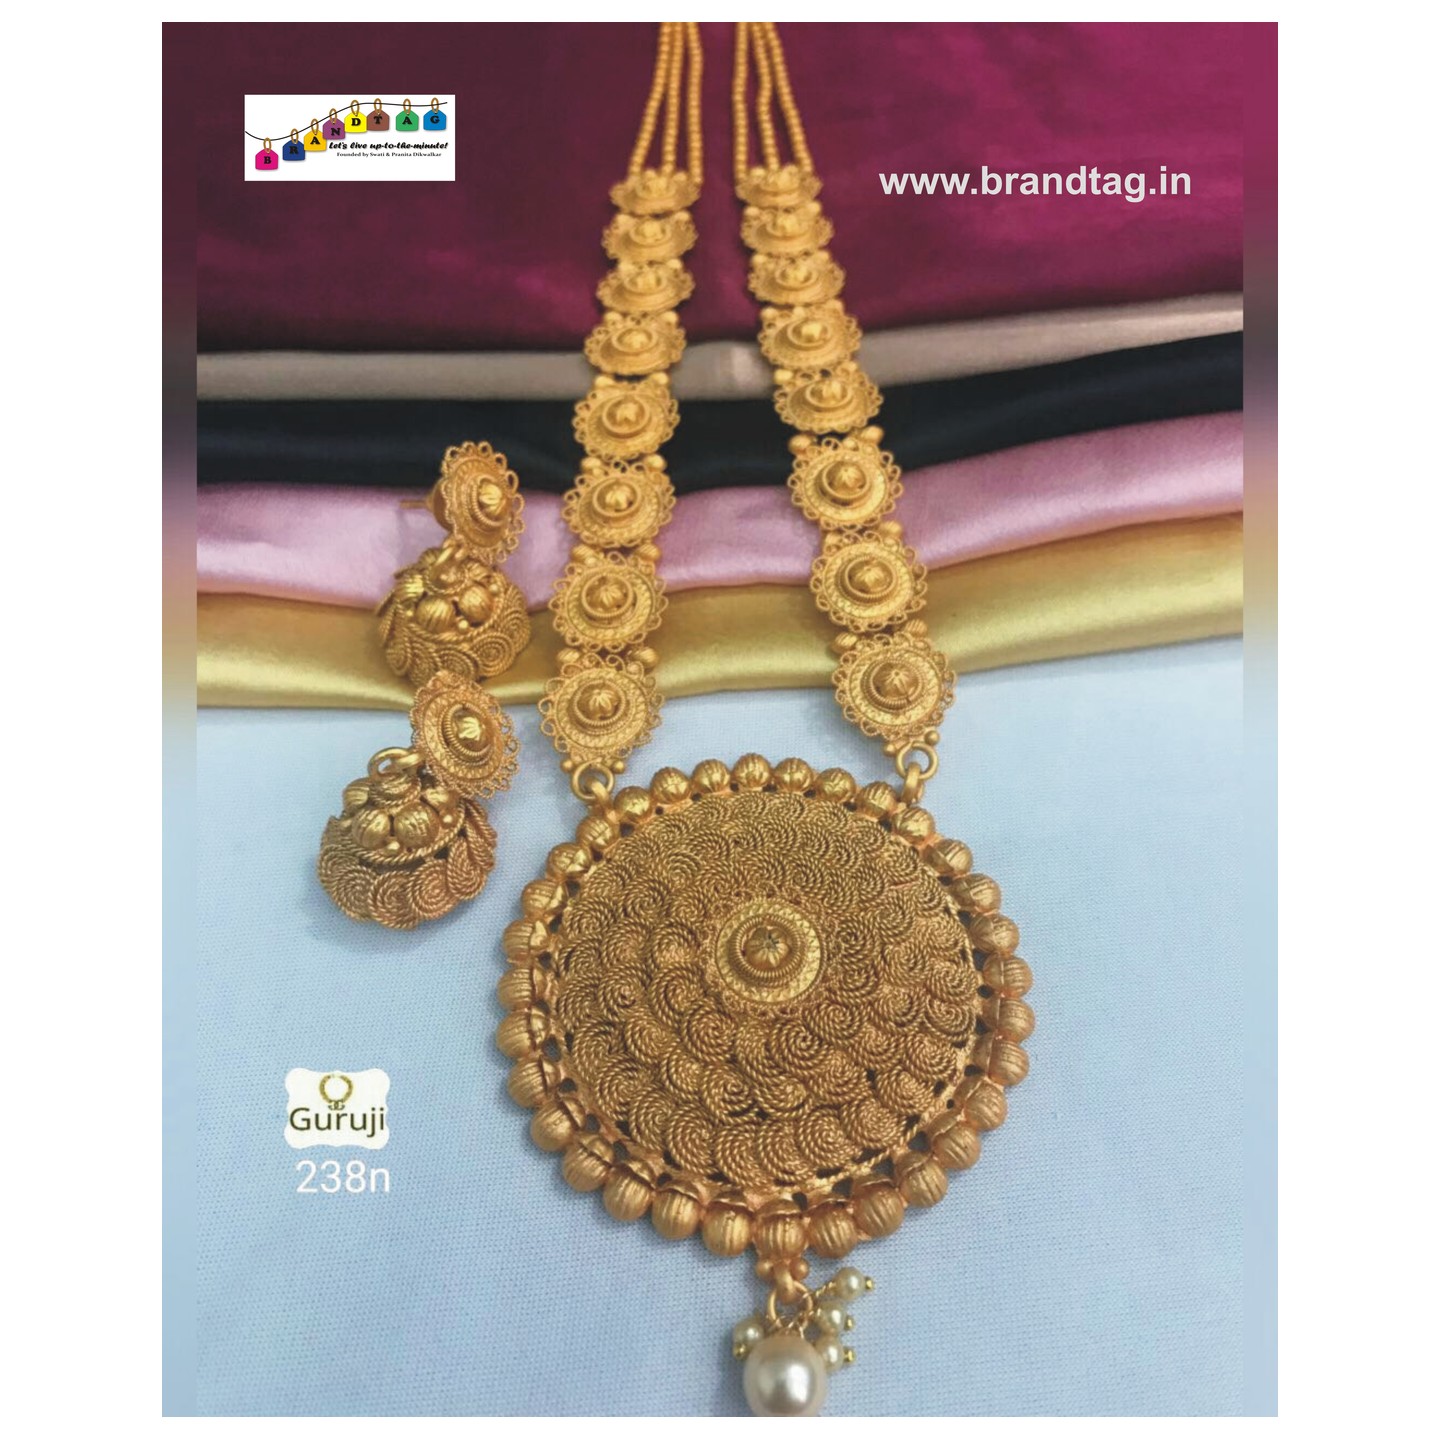 Exquisite Golden Chakli Thali Necklace set!! 